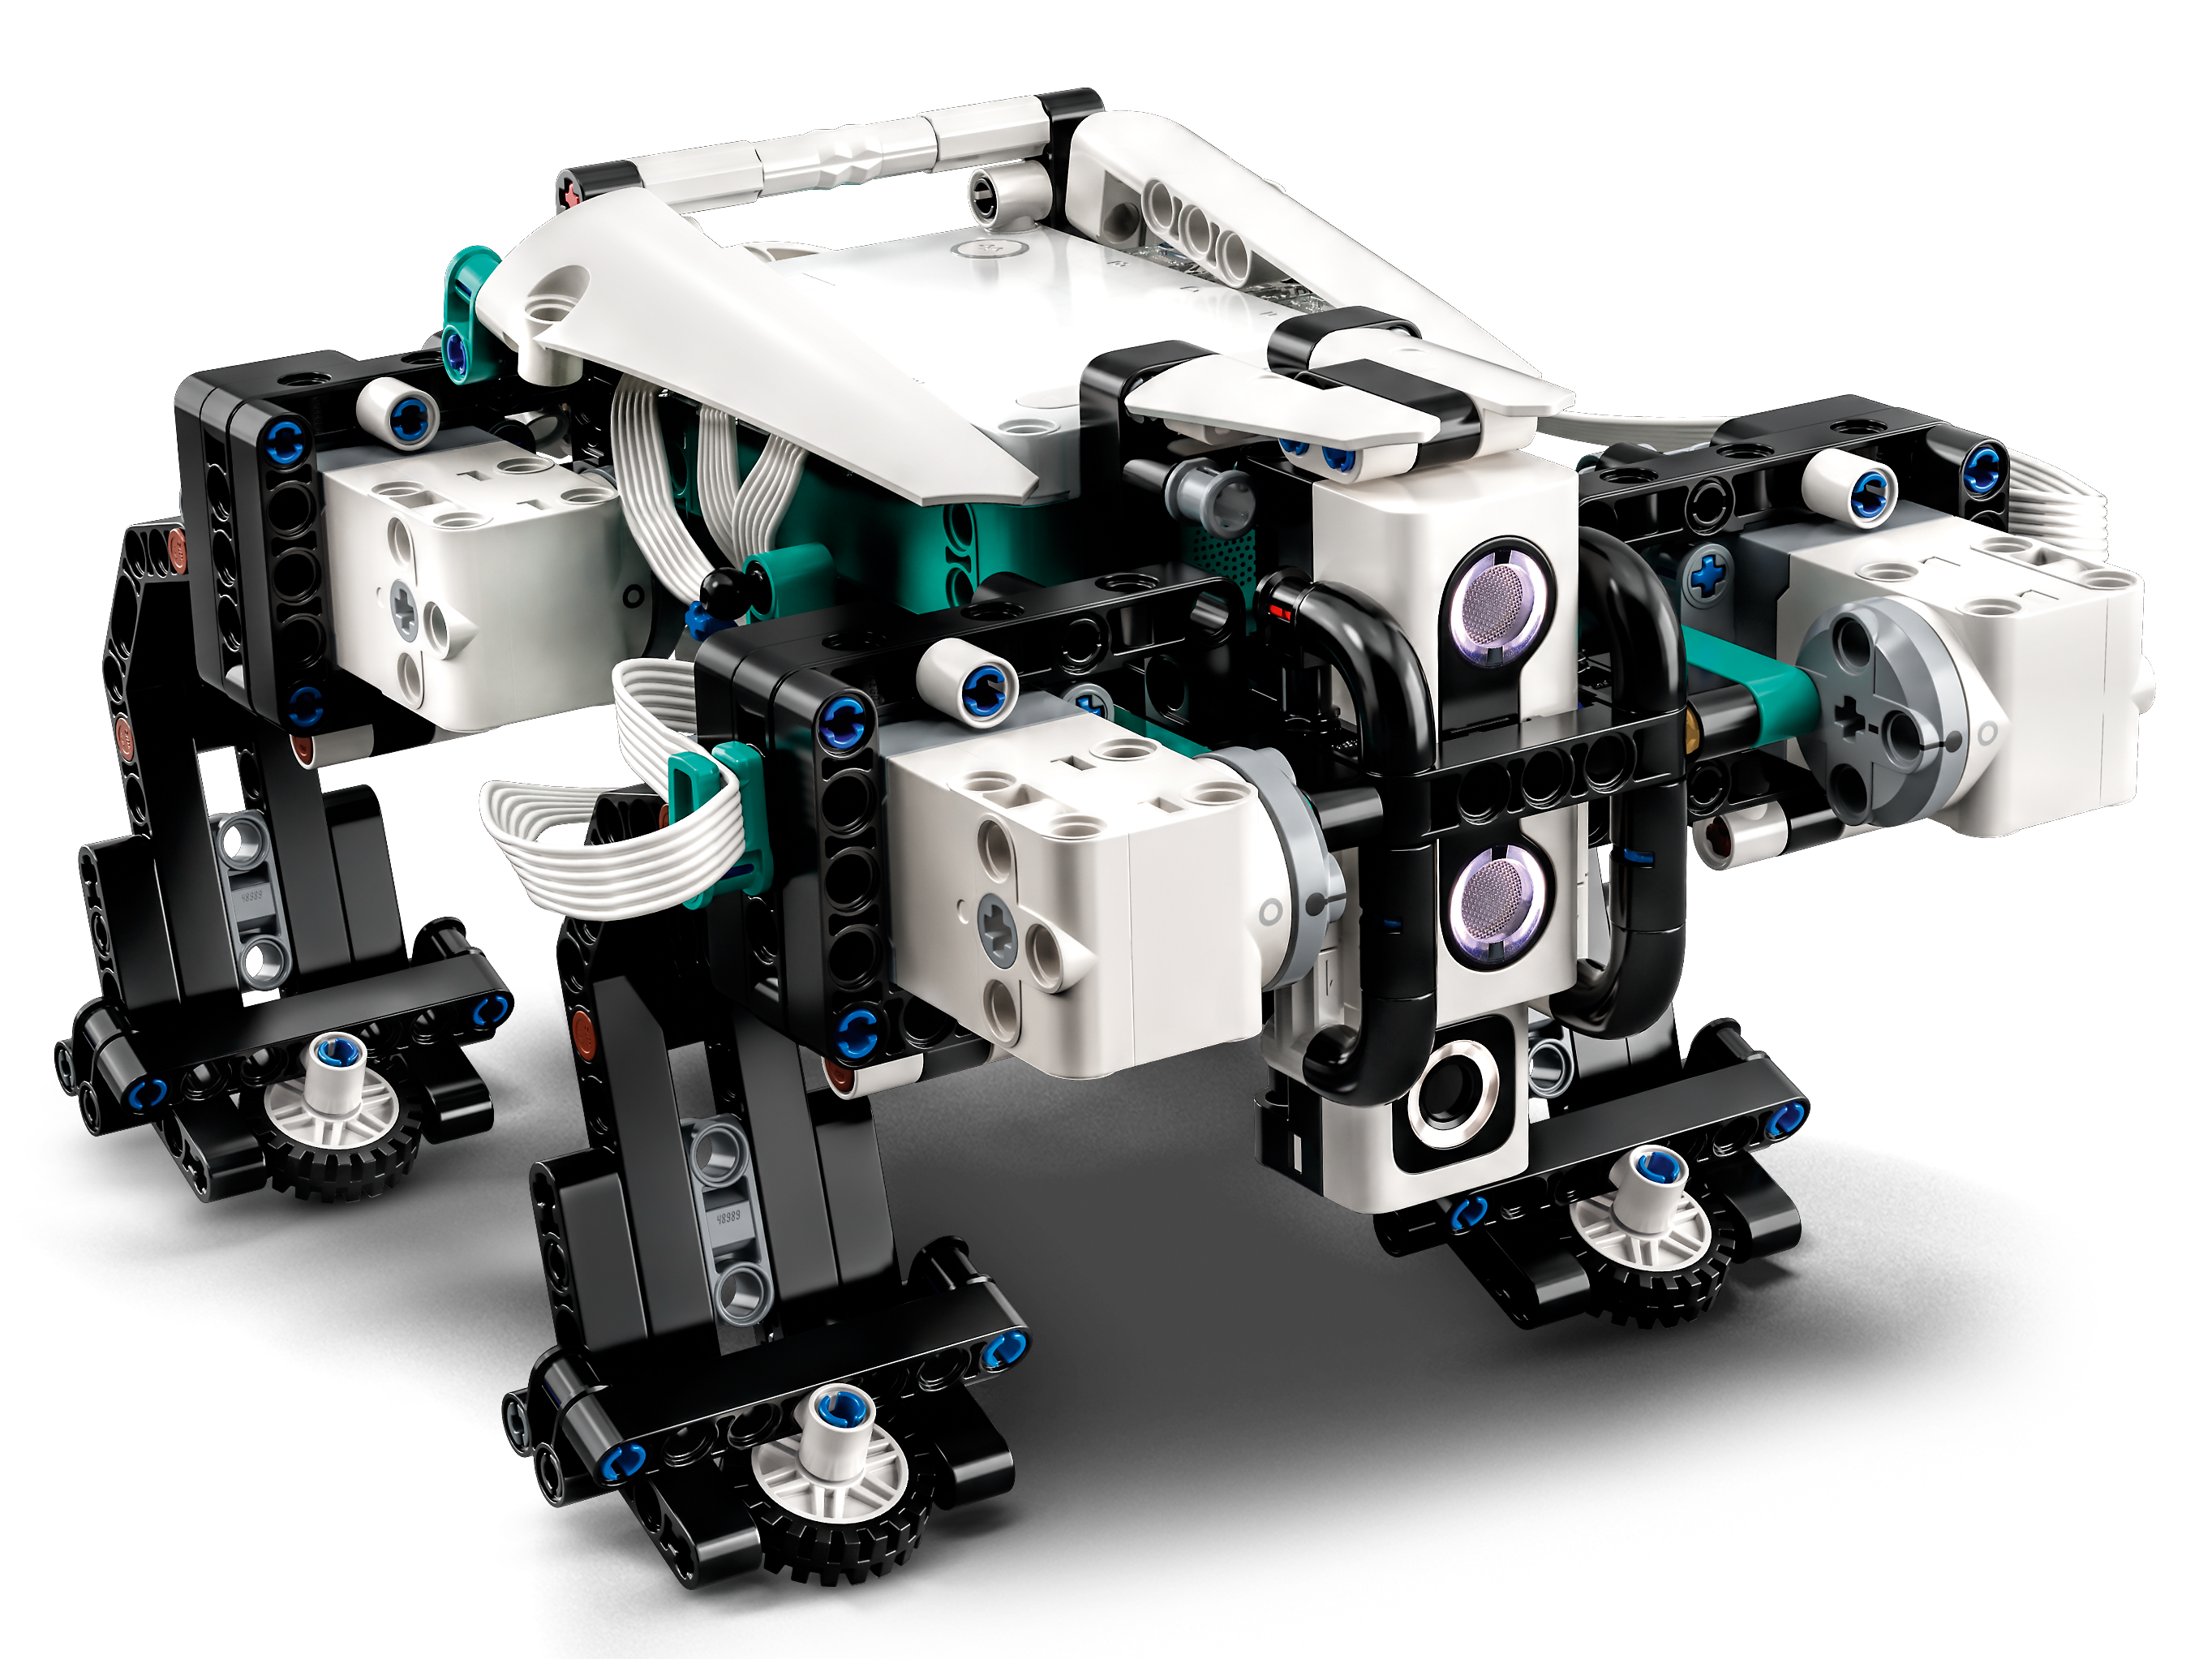 Set mit batteriebetriebenem Motor 5-in-1 App-gesteuertes interaktives Spielzeug für Kinder /& 60198 City Güterzug programmierbares LEGO 51515 MINDSTORMS Roboter-Erfinder Robotik-Kit